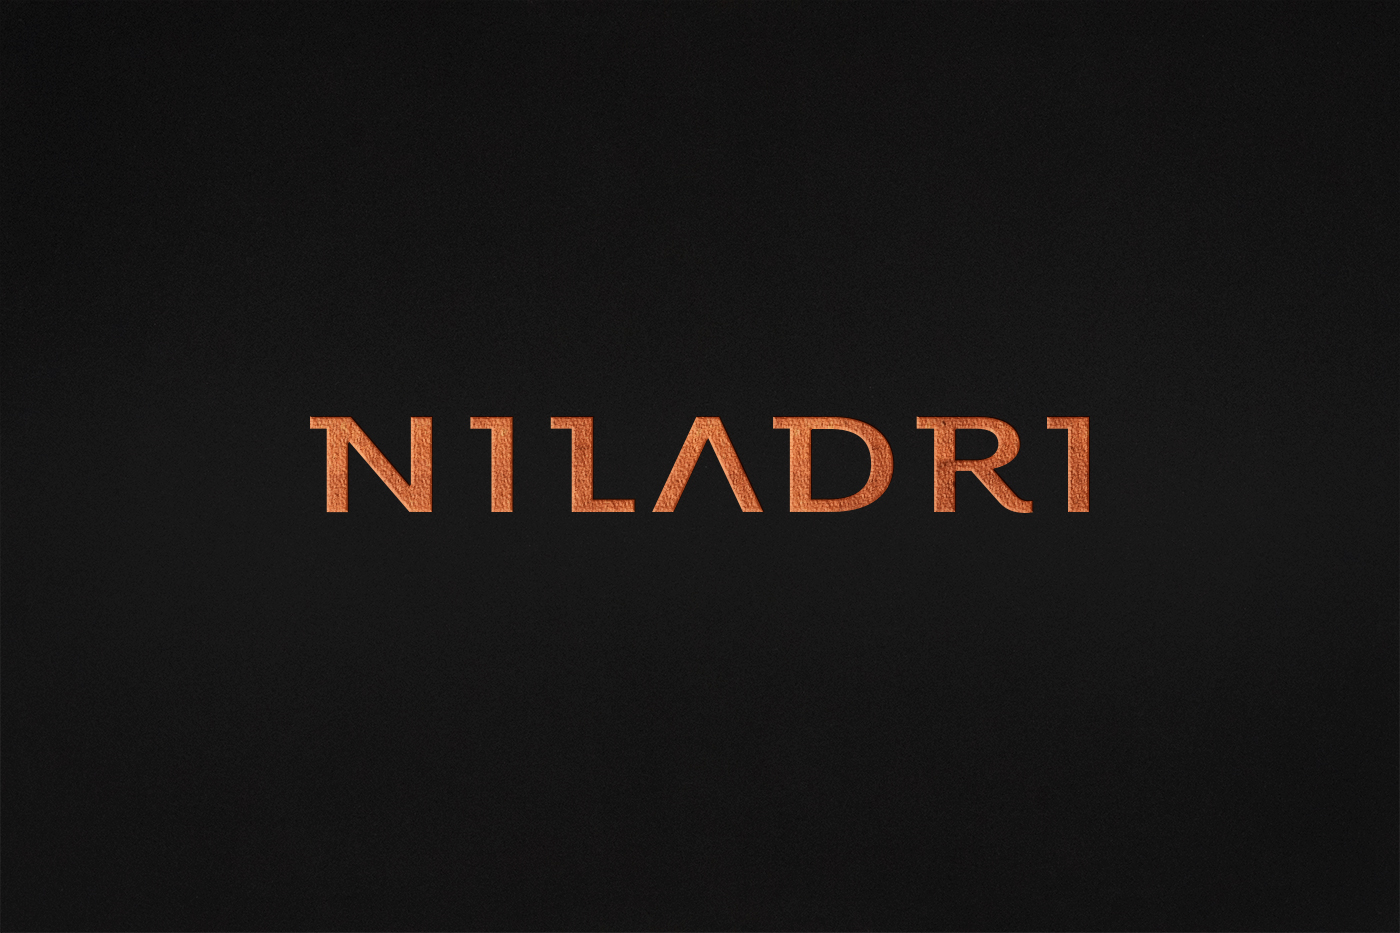 Niladri brand logo graphic design